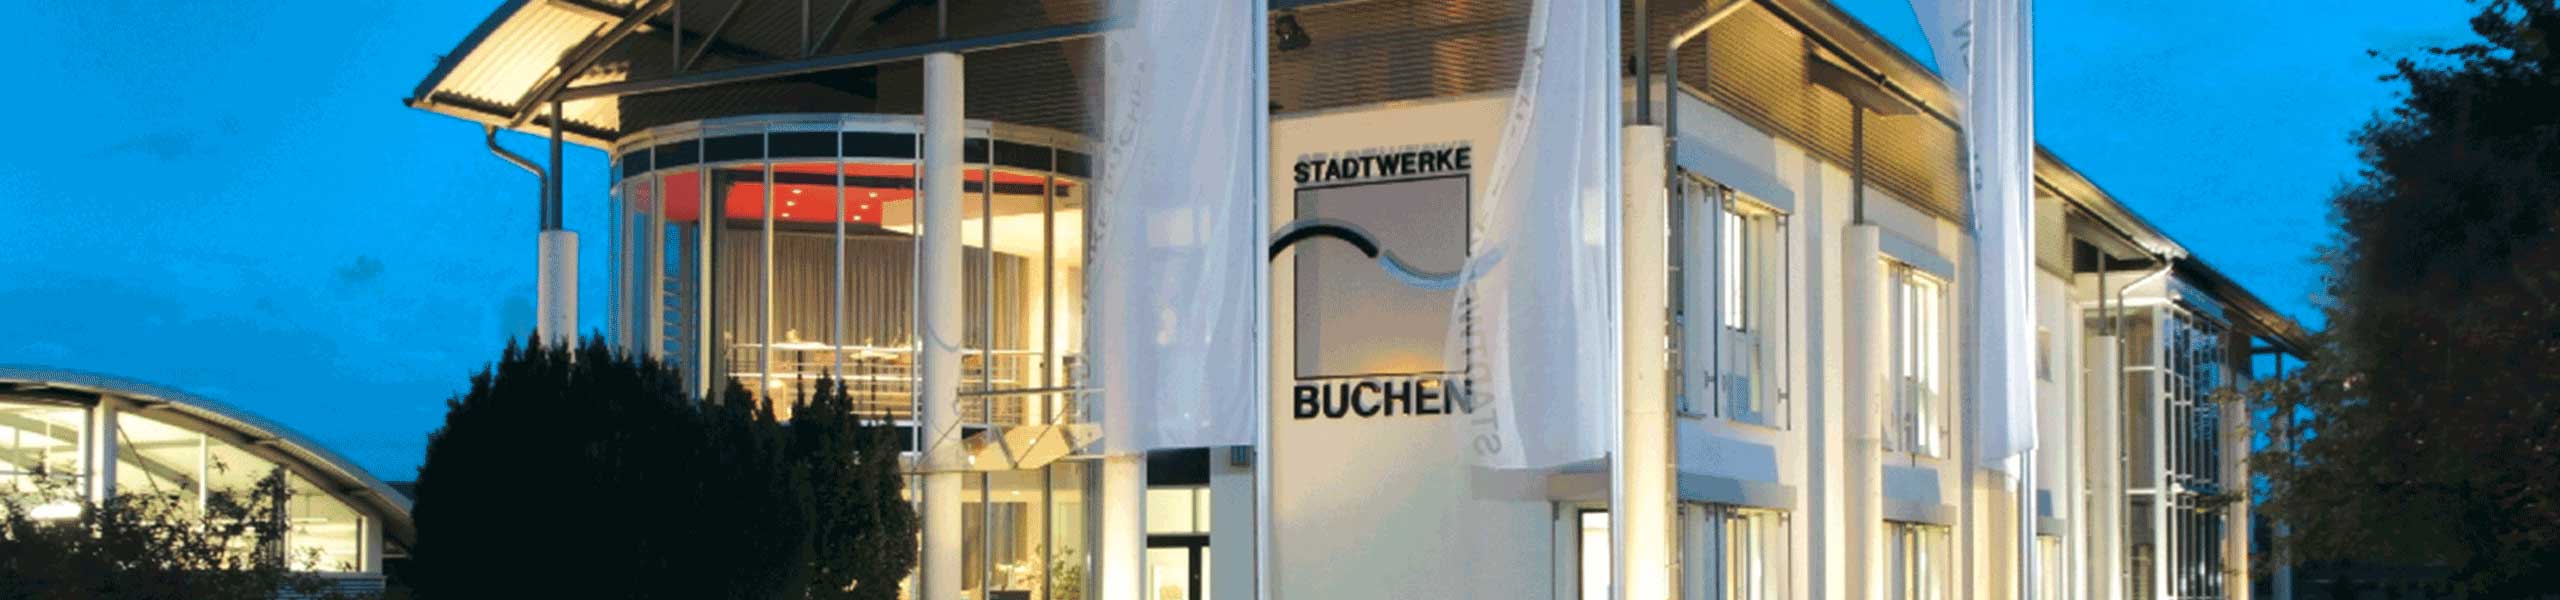 Stadtwerke Buchen GmbH & Co KG - Ihr Versorger vor Ort - Verleih Strommessgeräte